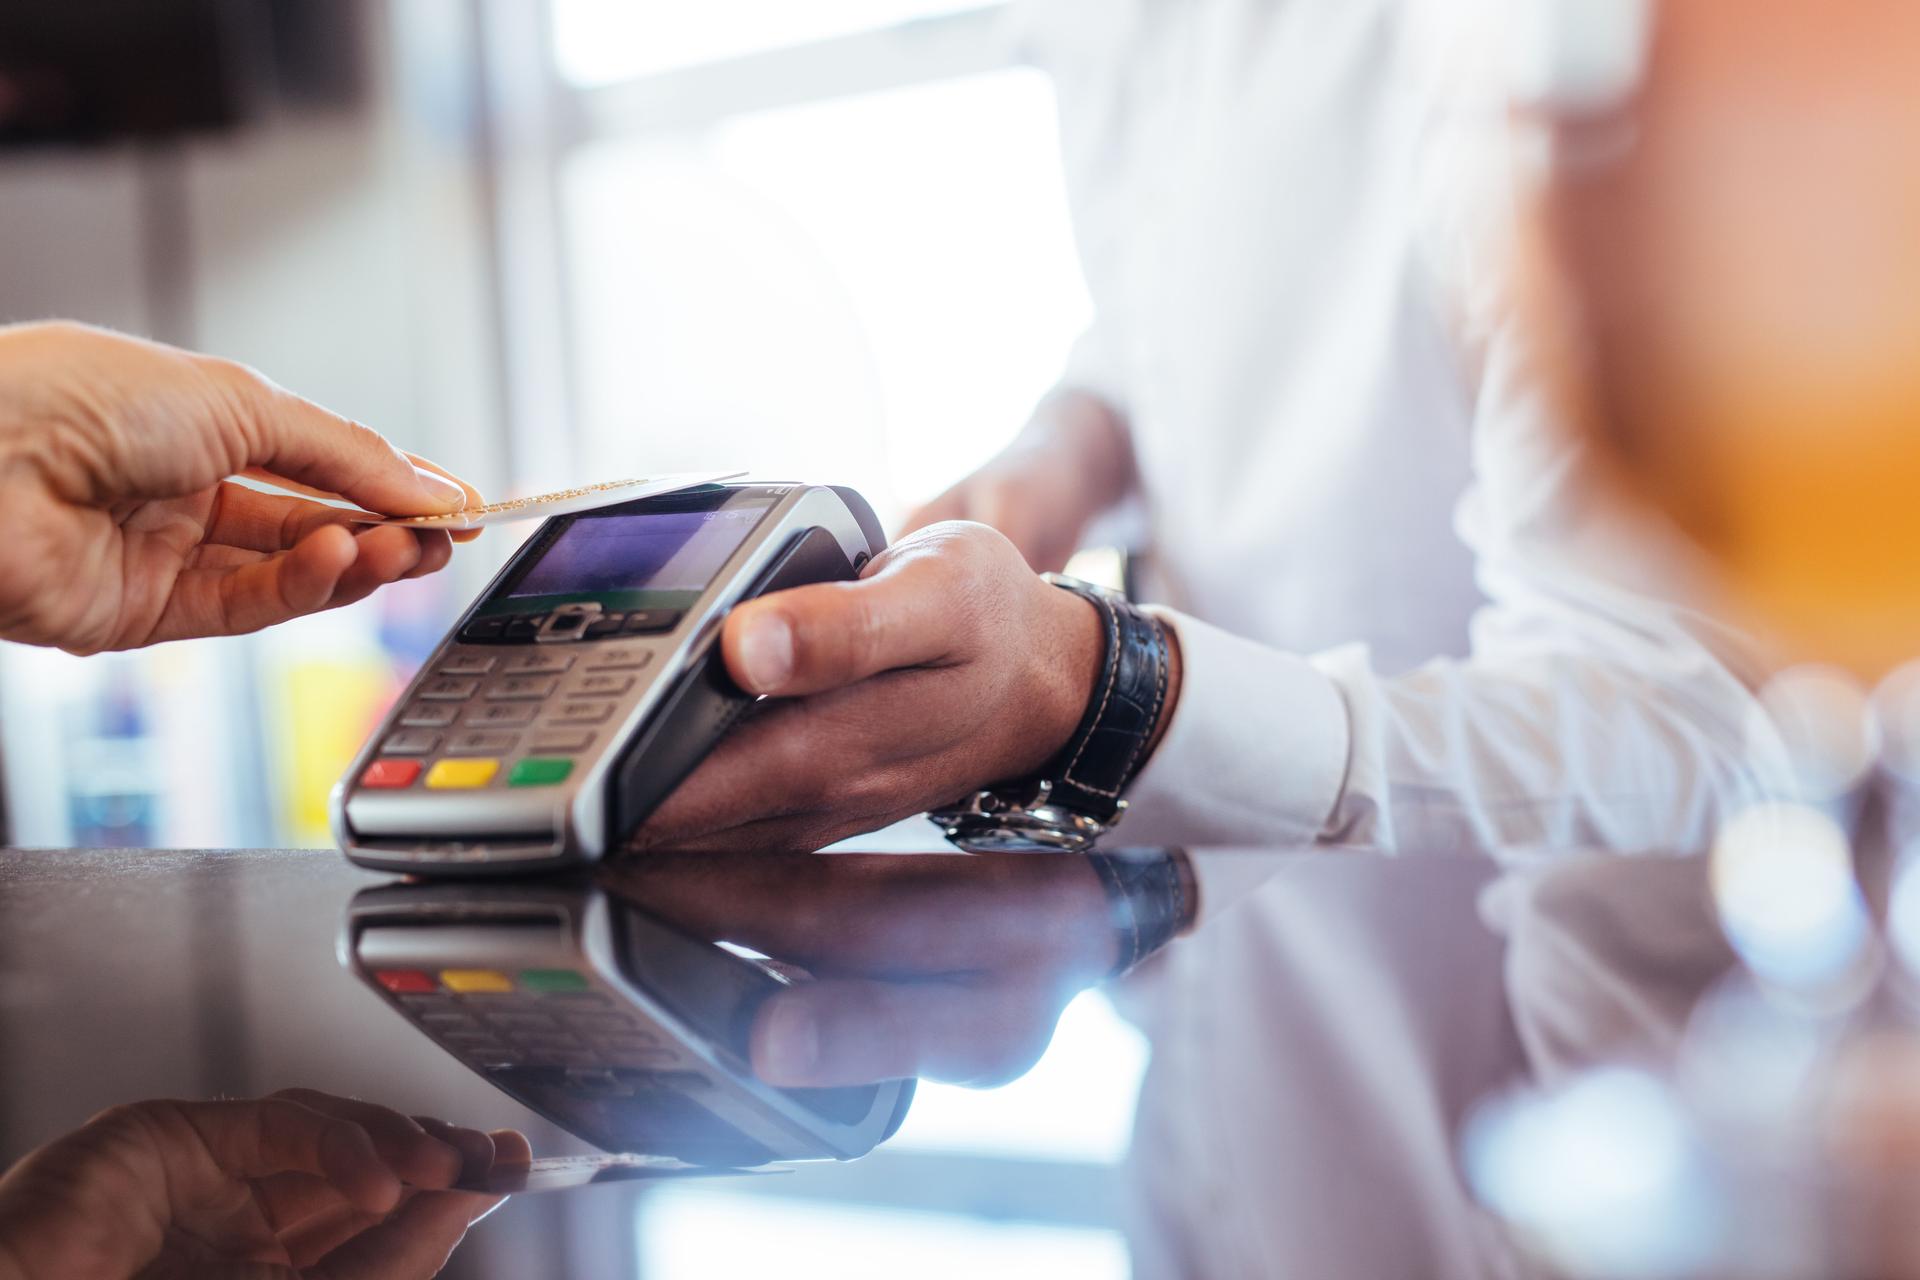 En person som betaler med kredittkort ved å holde et kredittkort mot en betalingsterminal.